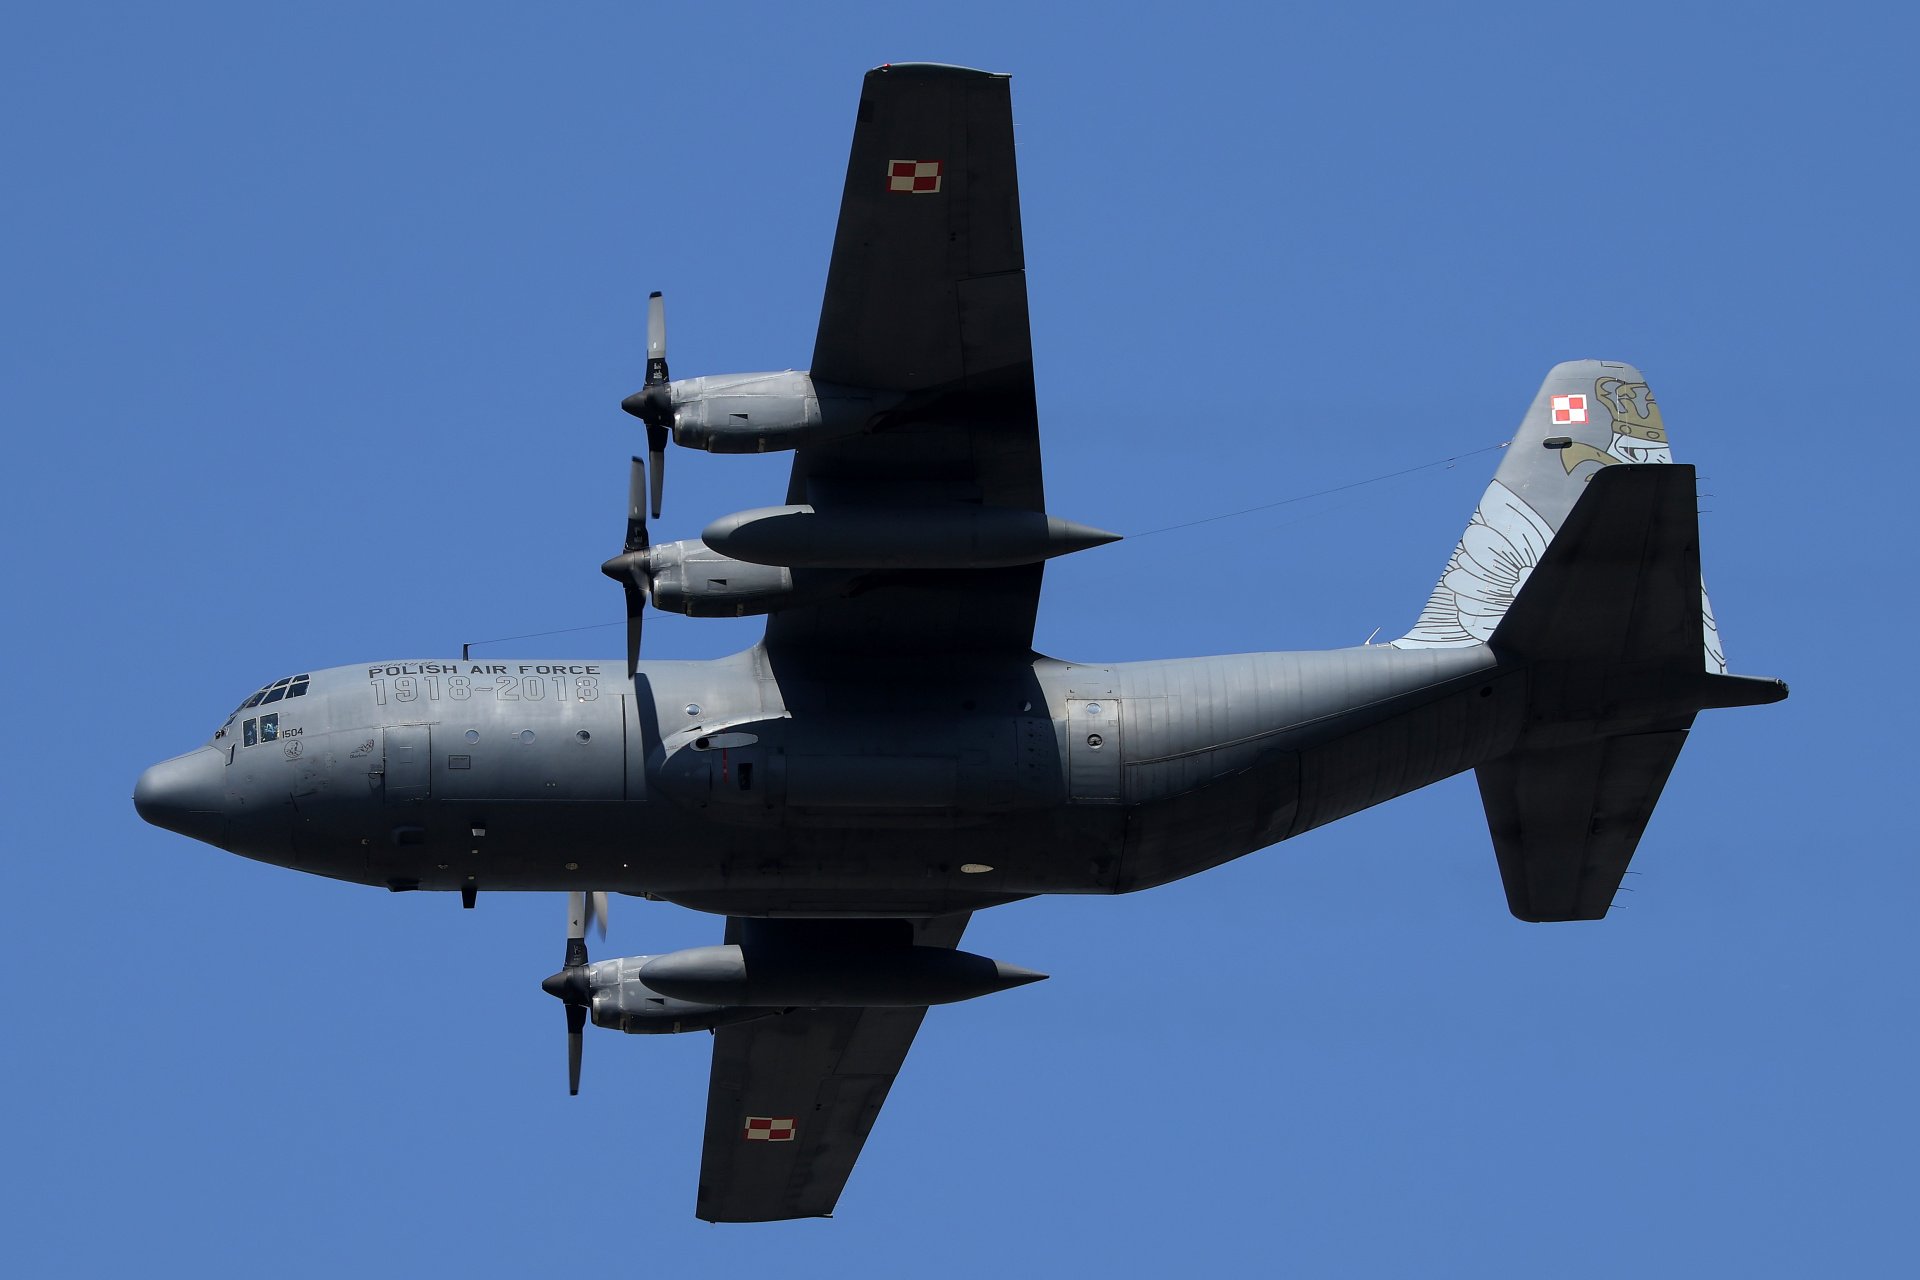 1504 (1918-2018. 100 years of Polish Air Force livery) (Aircraft » Air Show Radom 2023 » Lockheed C-130E Hercules, Polish Air Force)